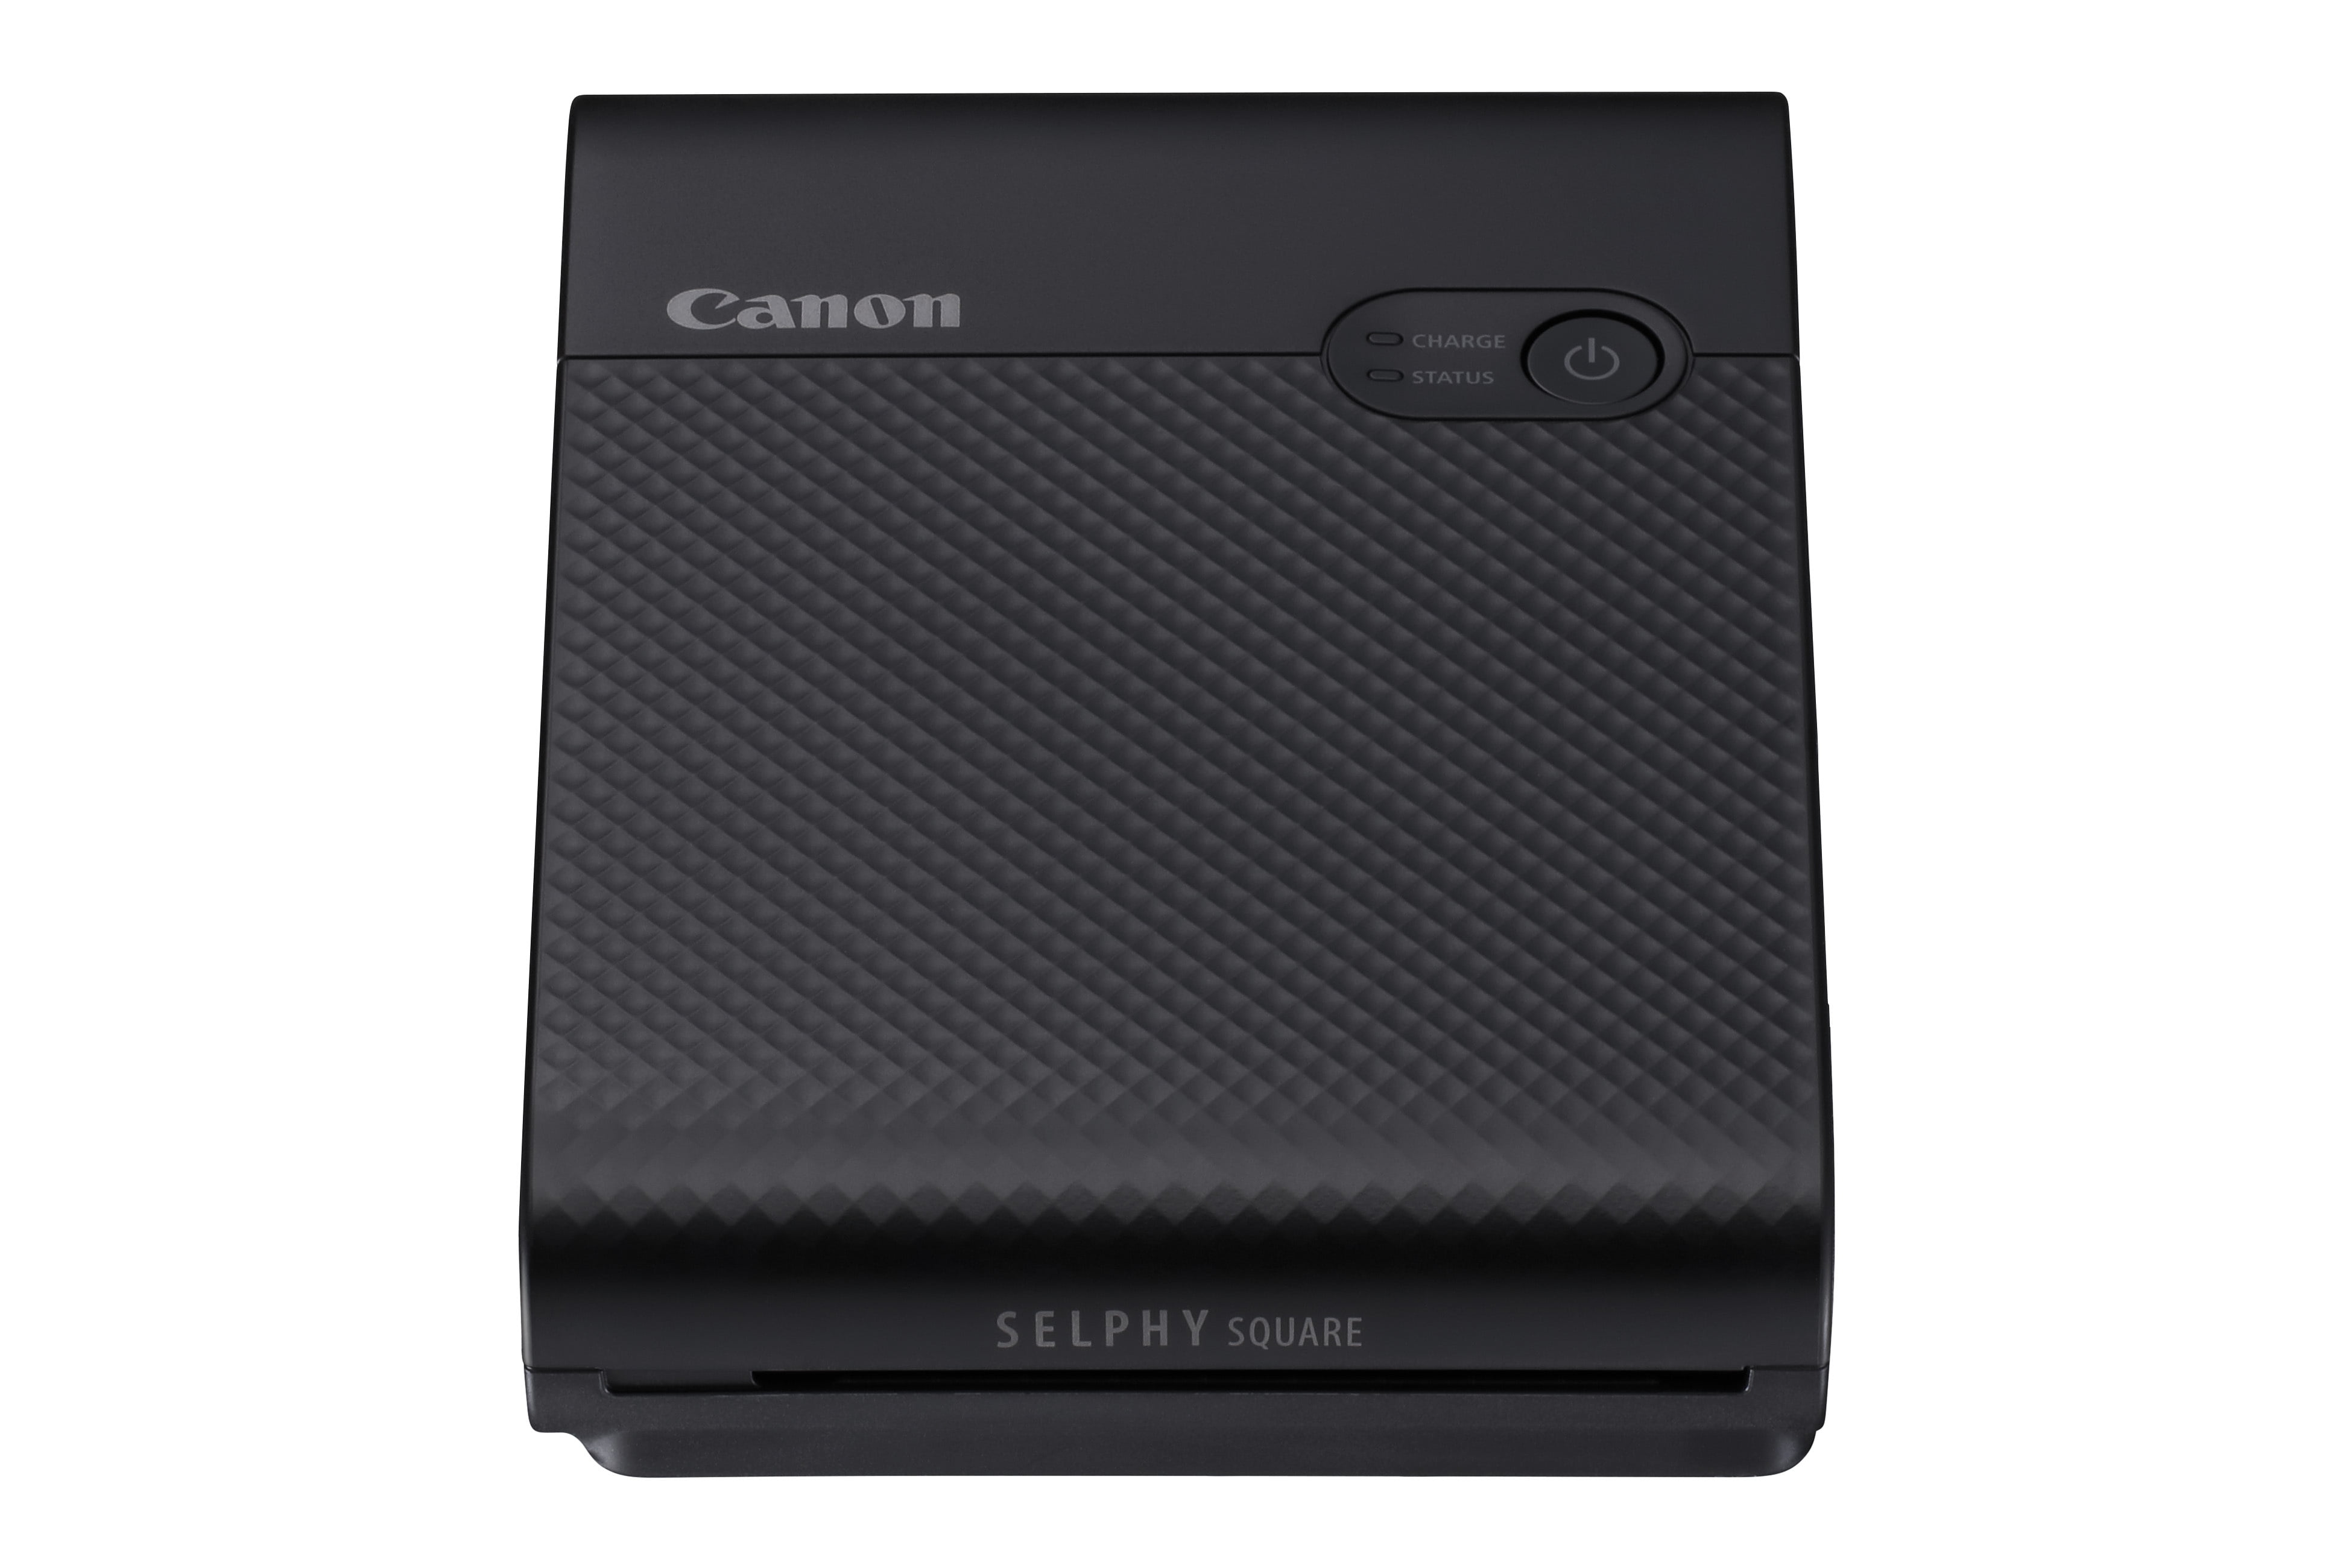 Printer Wireless - Canon Photo Square Black QX10 SELPHY